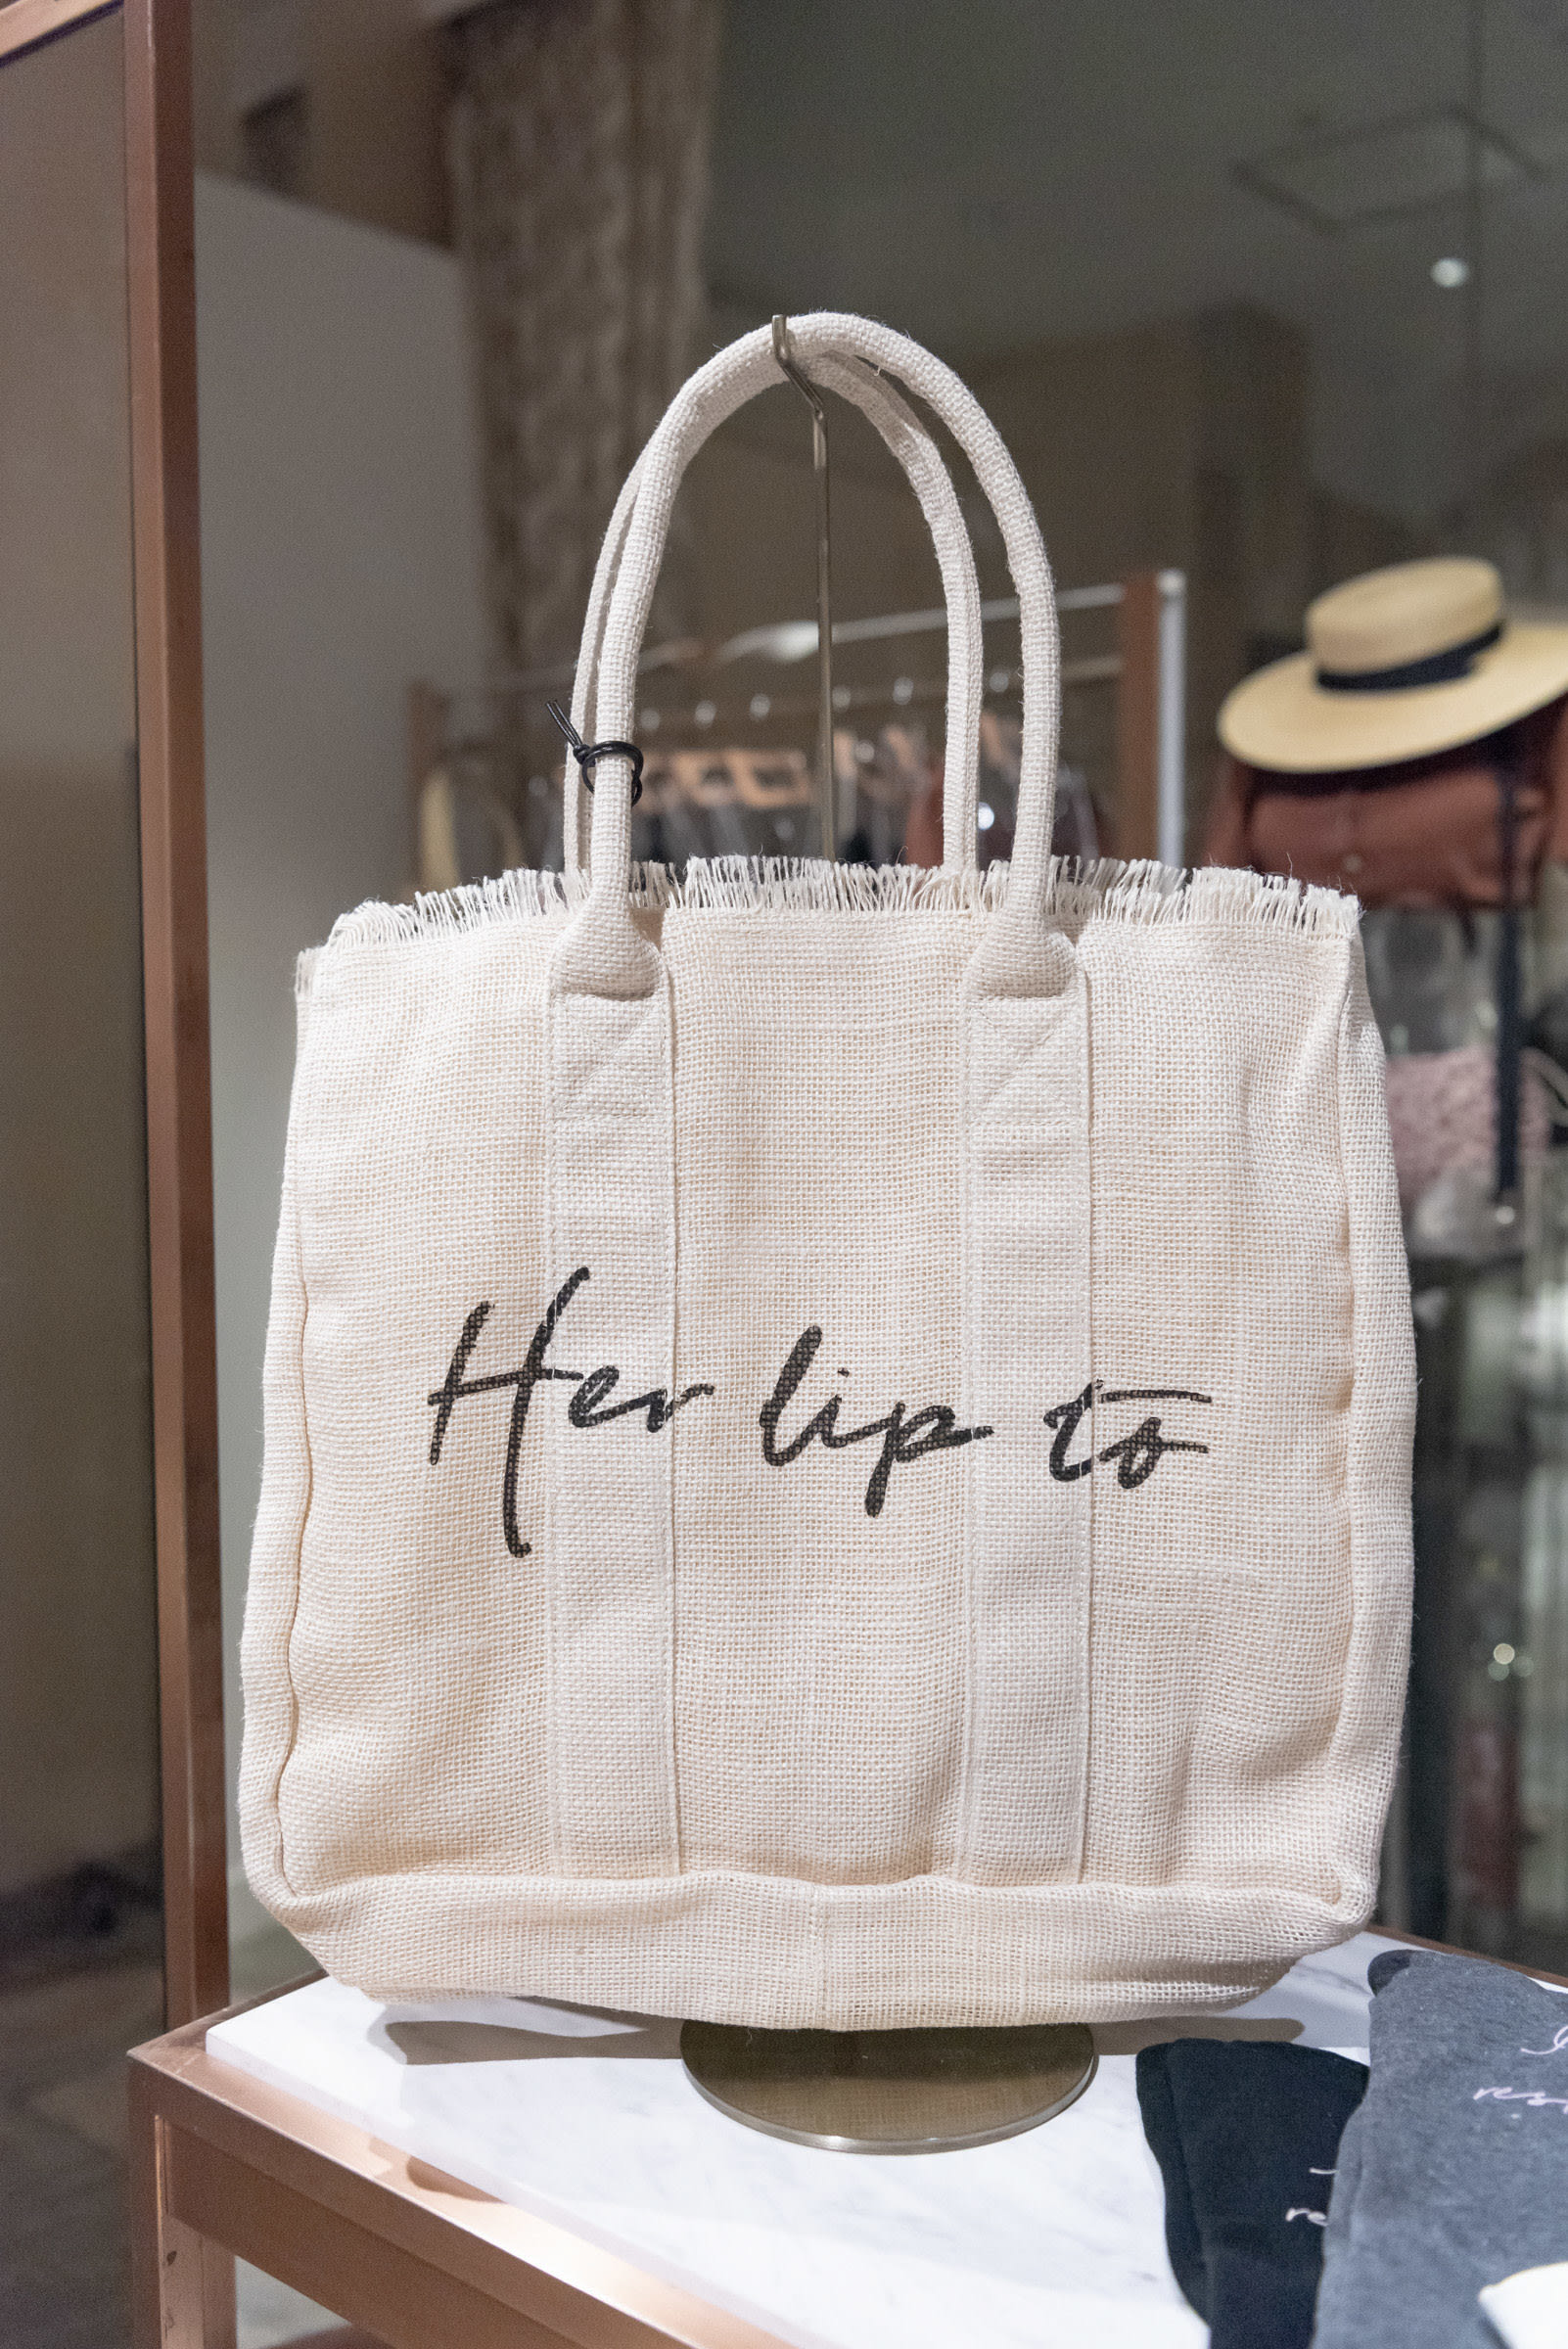 小嶋陽菜によるブランド「Her lip to」限定店が伊勢丹新宿店に、リップ柄のワンピースやチェリー柄のセットアップが登場